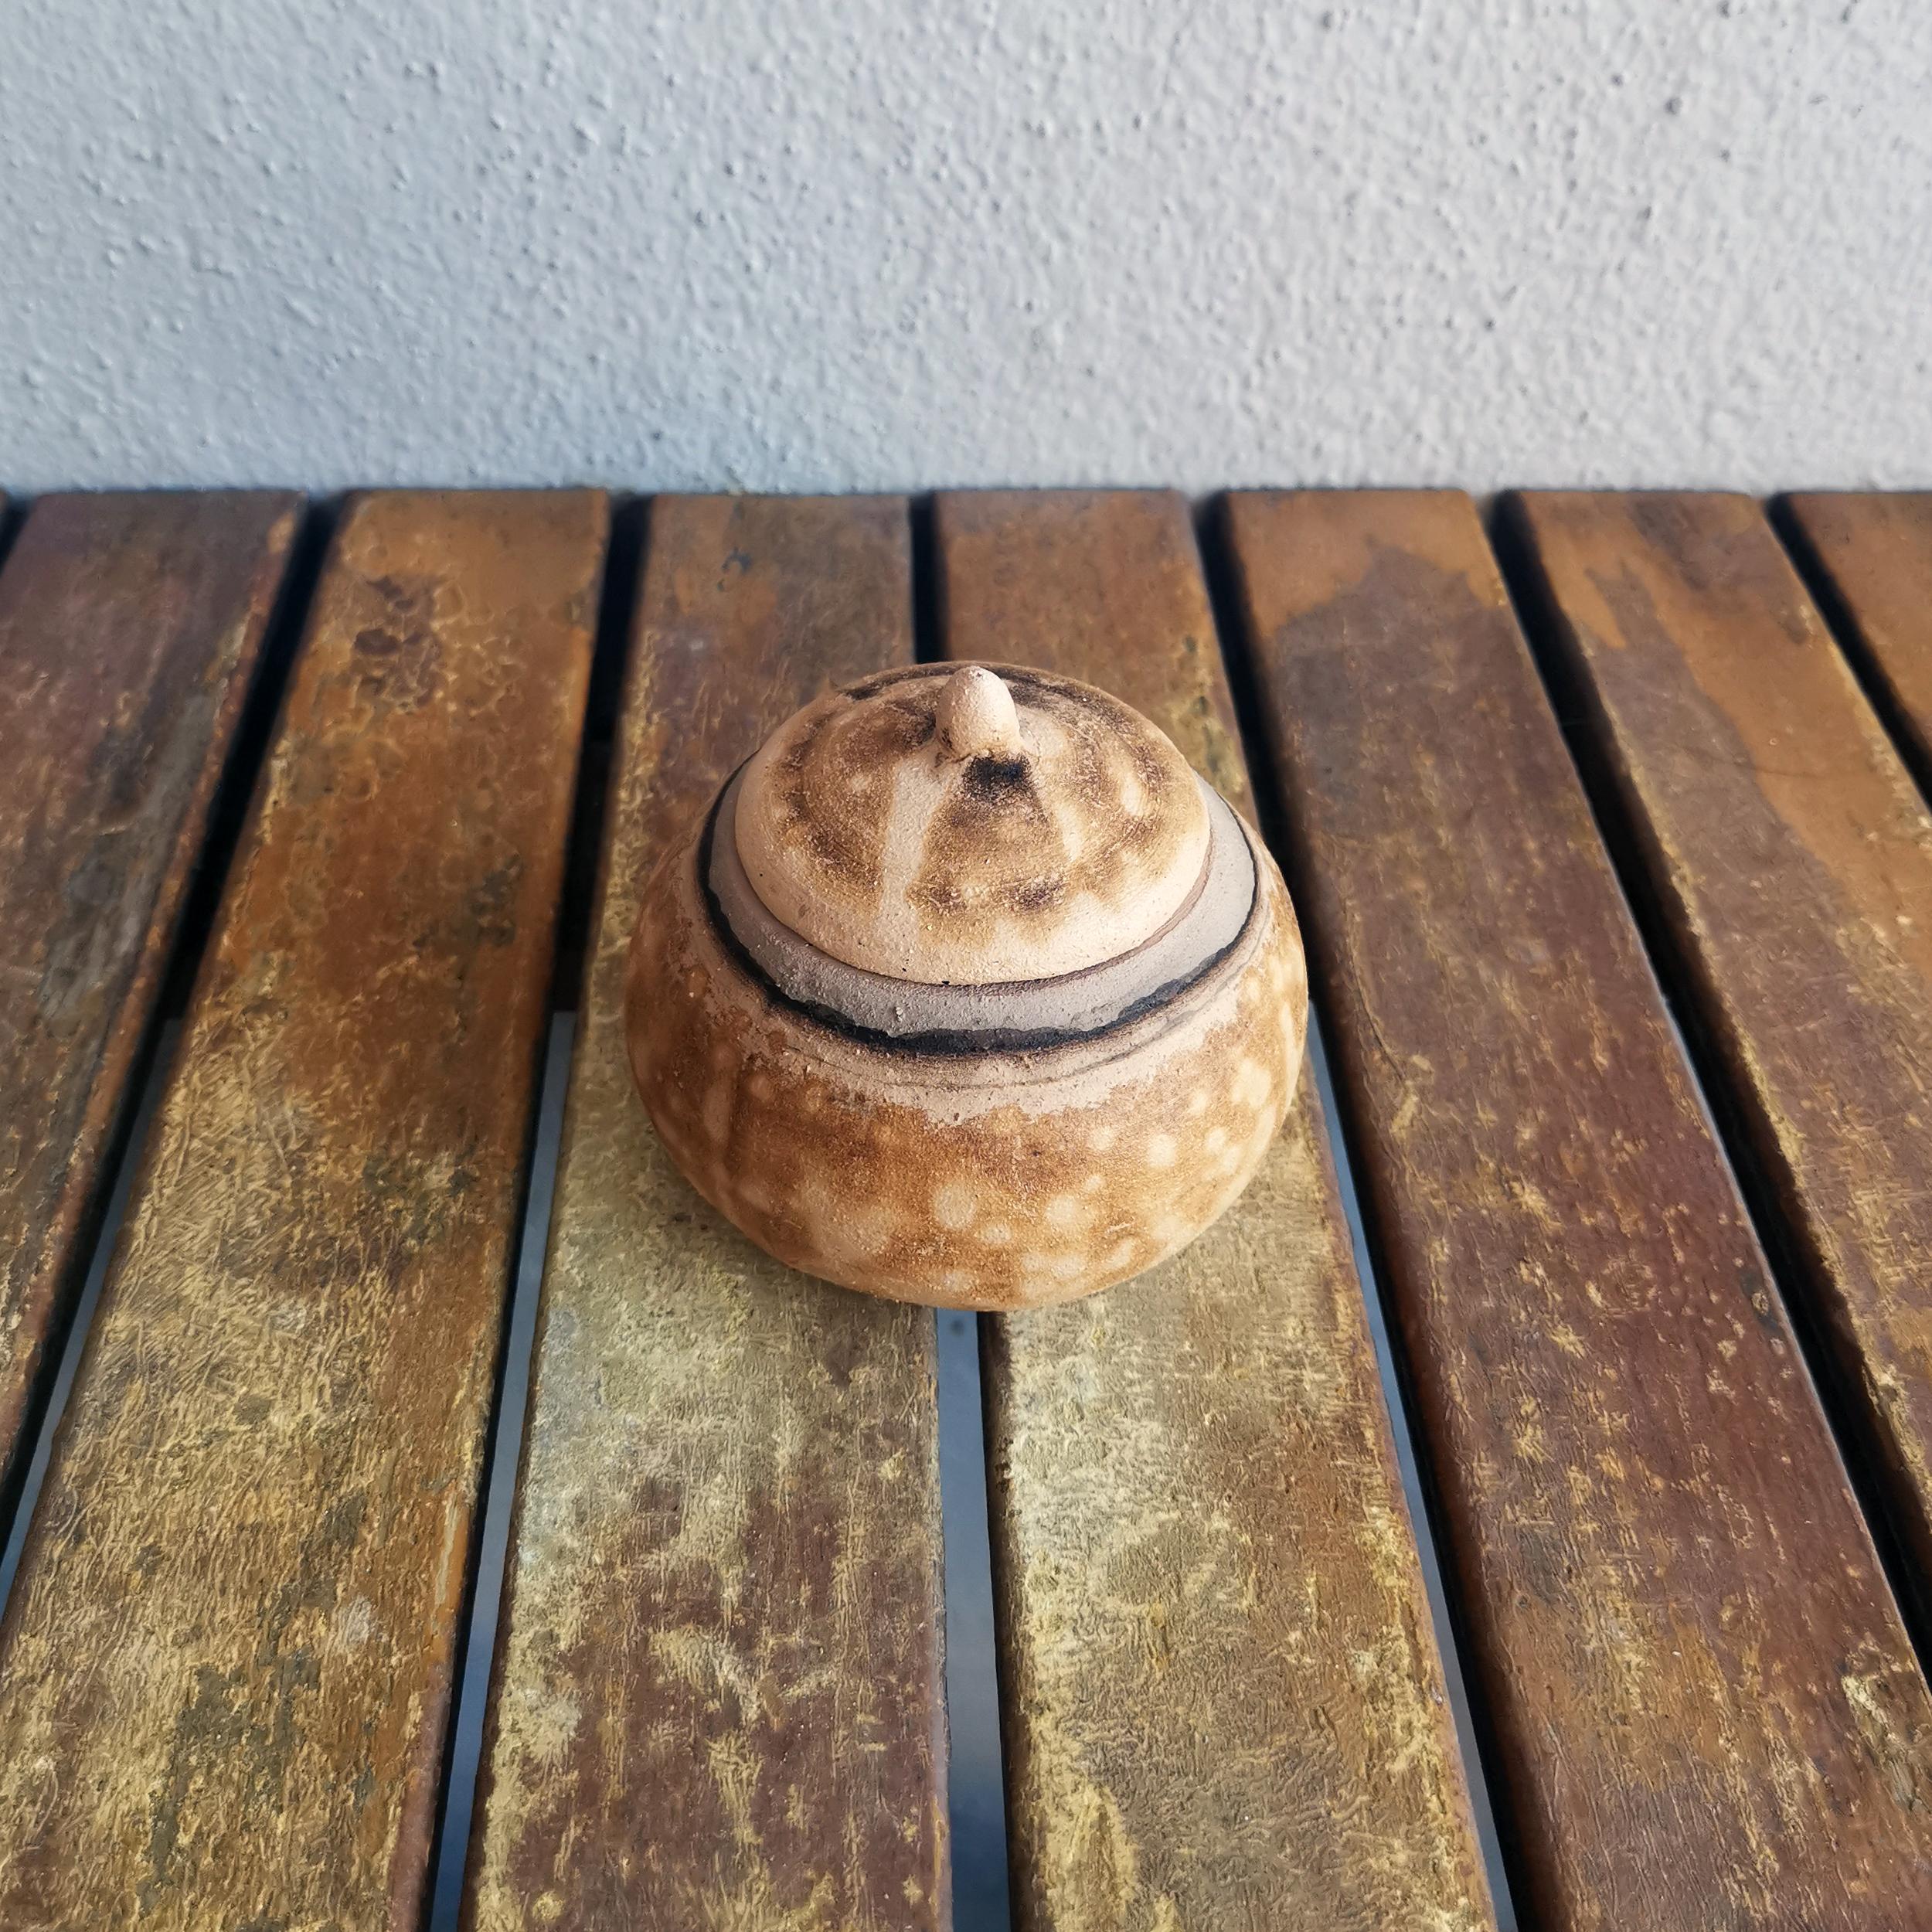 Ai ~ Liebe

Unsere Ai Mini Urne ist die kleinste Urne in dieser Serie. Es ist ein Stück in der Größe einer halben Handfläche, das sich am besten eignet, um die Erinnerung an einen geliebten Menschen visuell festzuhalten. Diese Urne kann dauerhaft